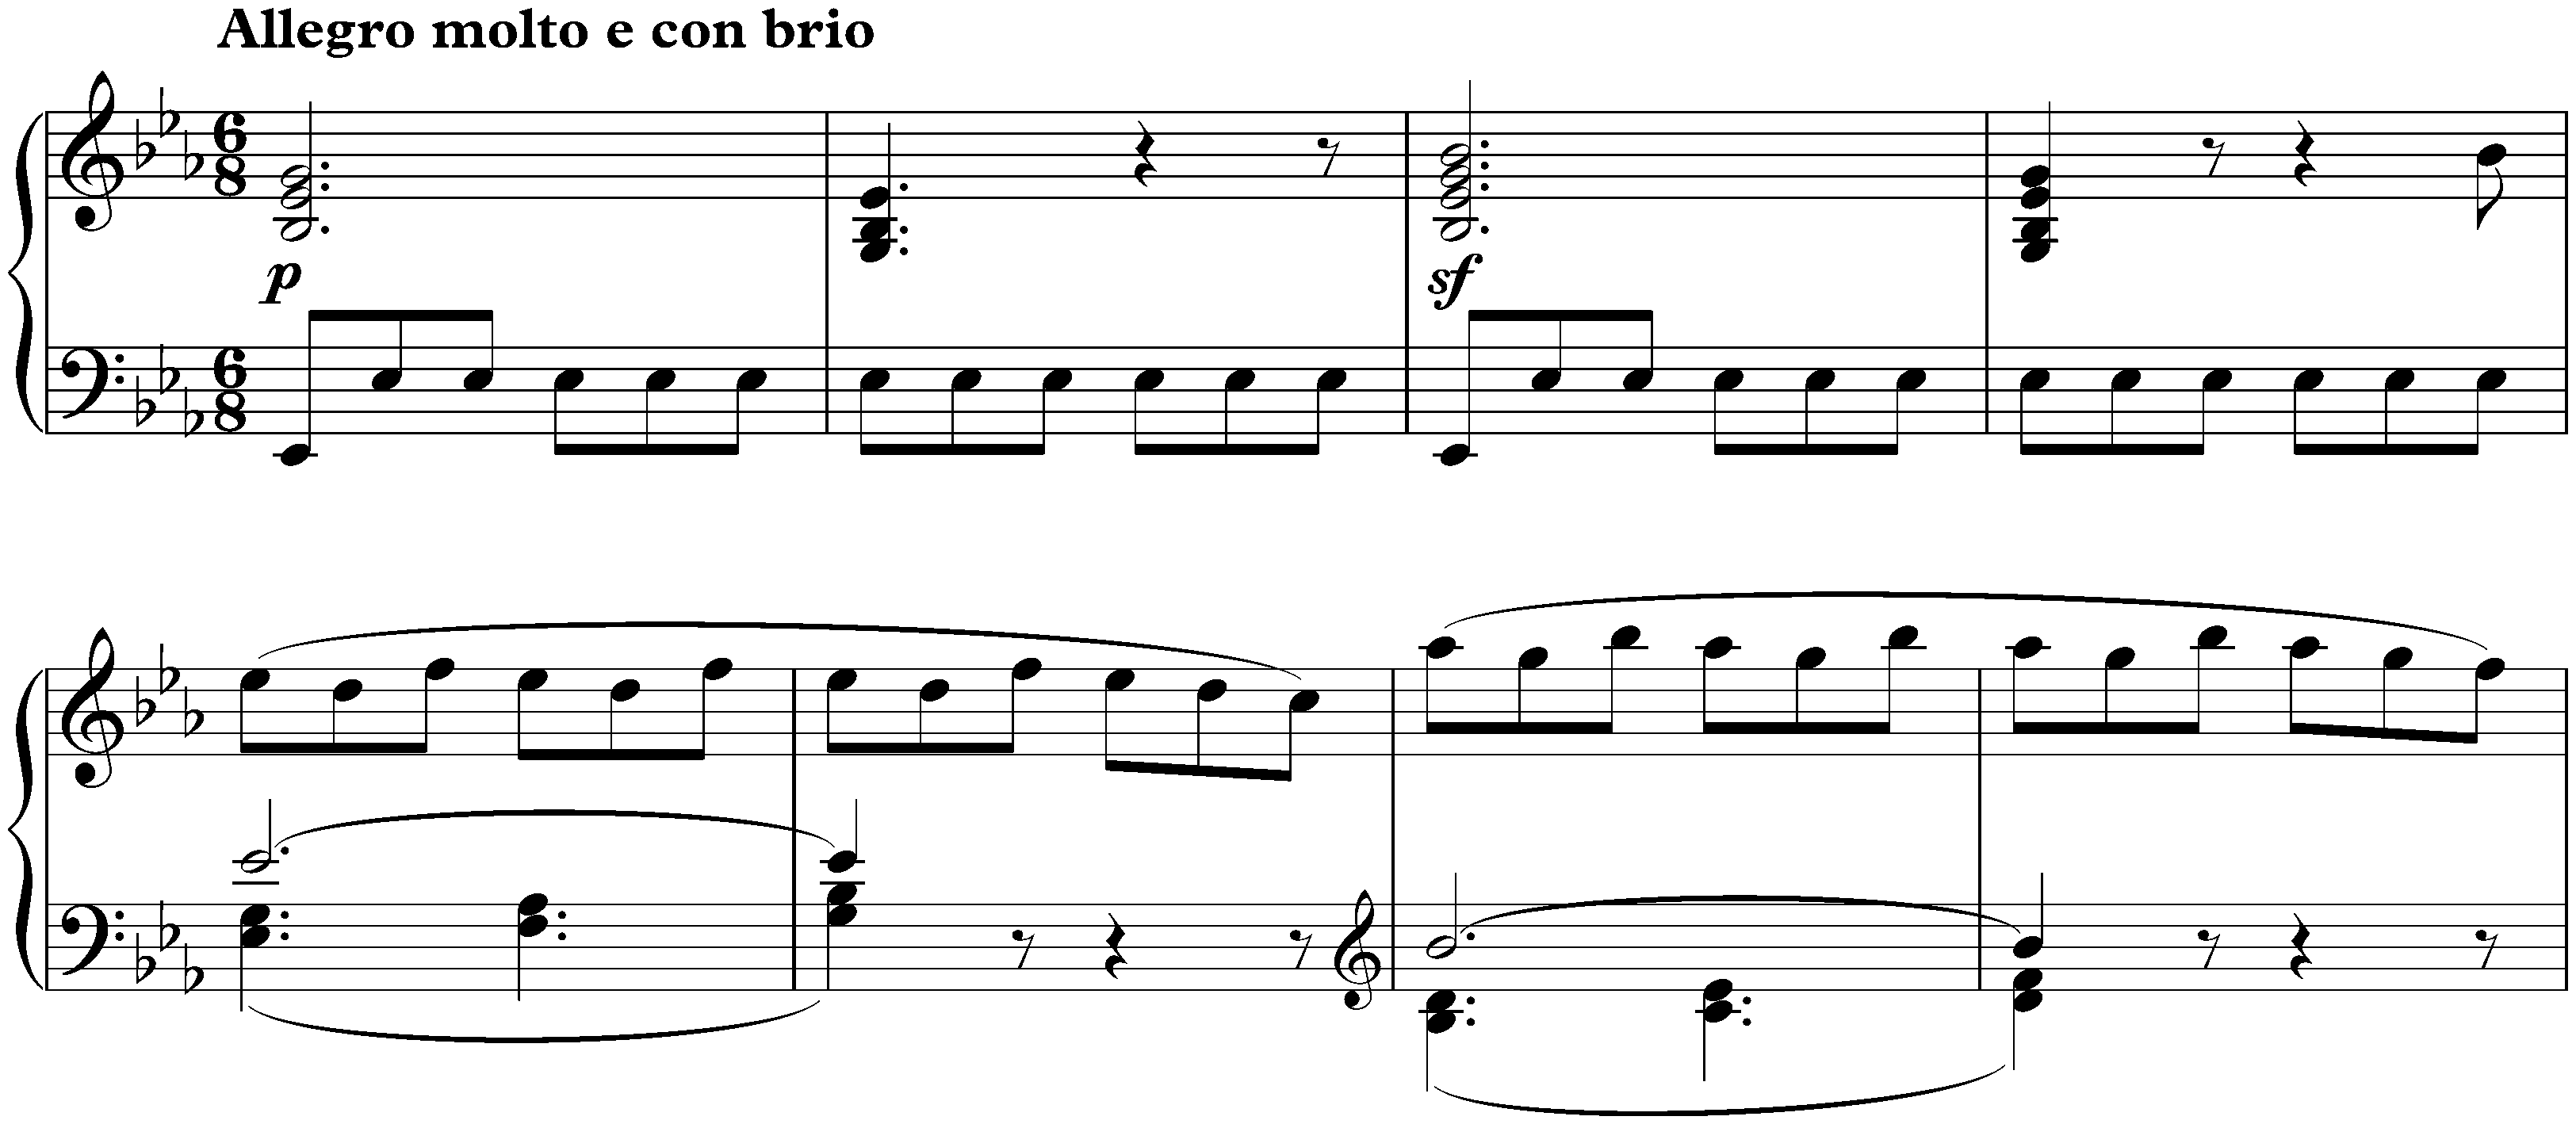 Sonata no. 4 in E-flat major, op. 7; 1. Allegro molto e con brio